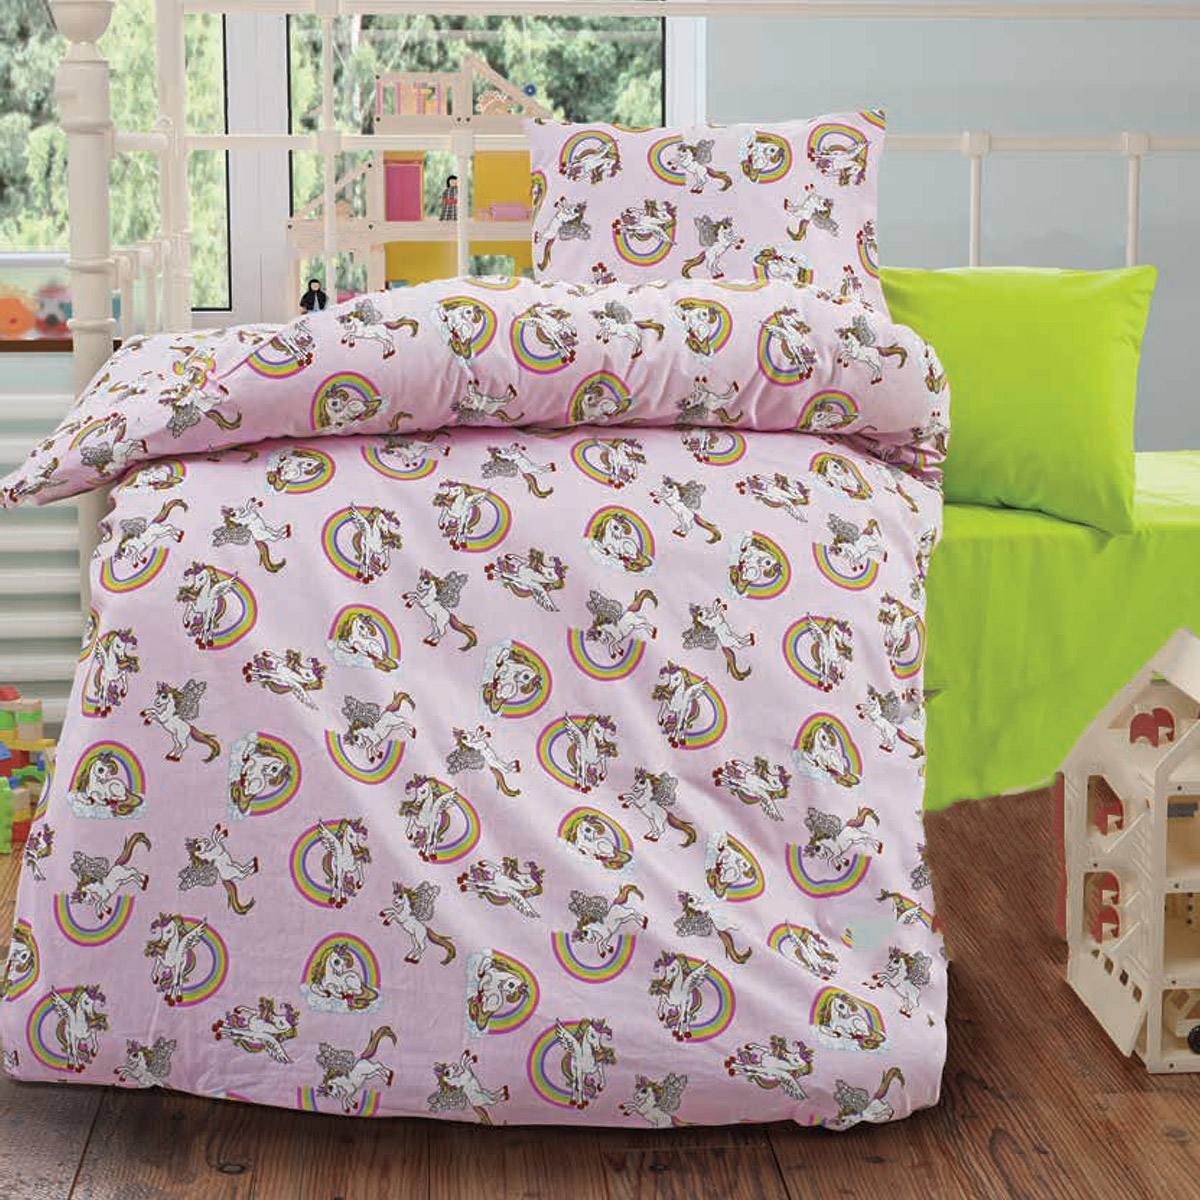 Lenjerie de pat copii Love Poni bumbac 100%, 3 piese, multicolor, 160 x 200 cm